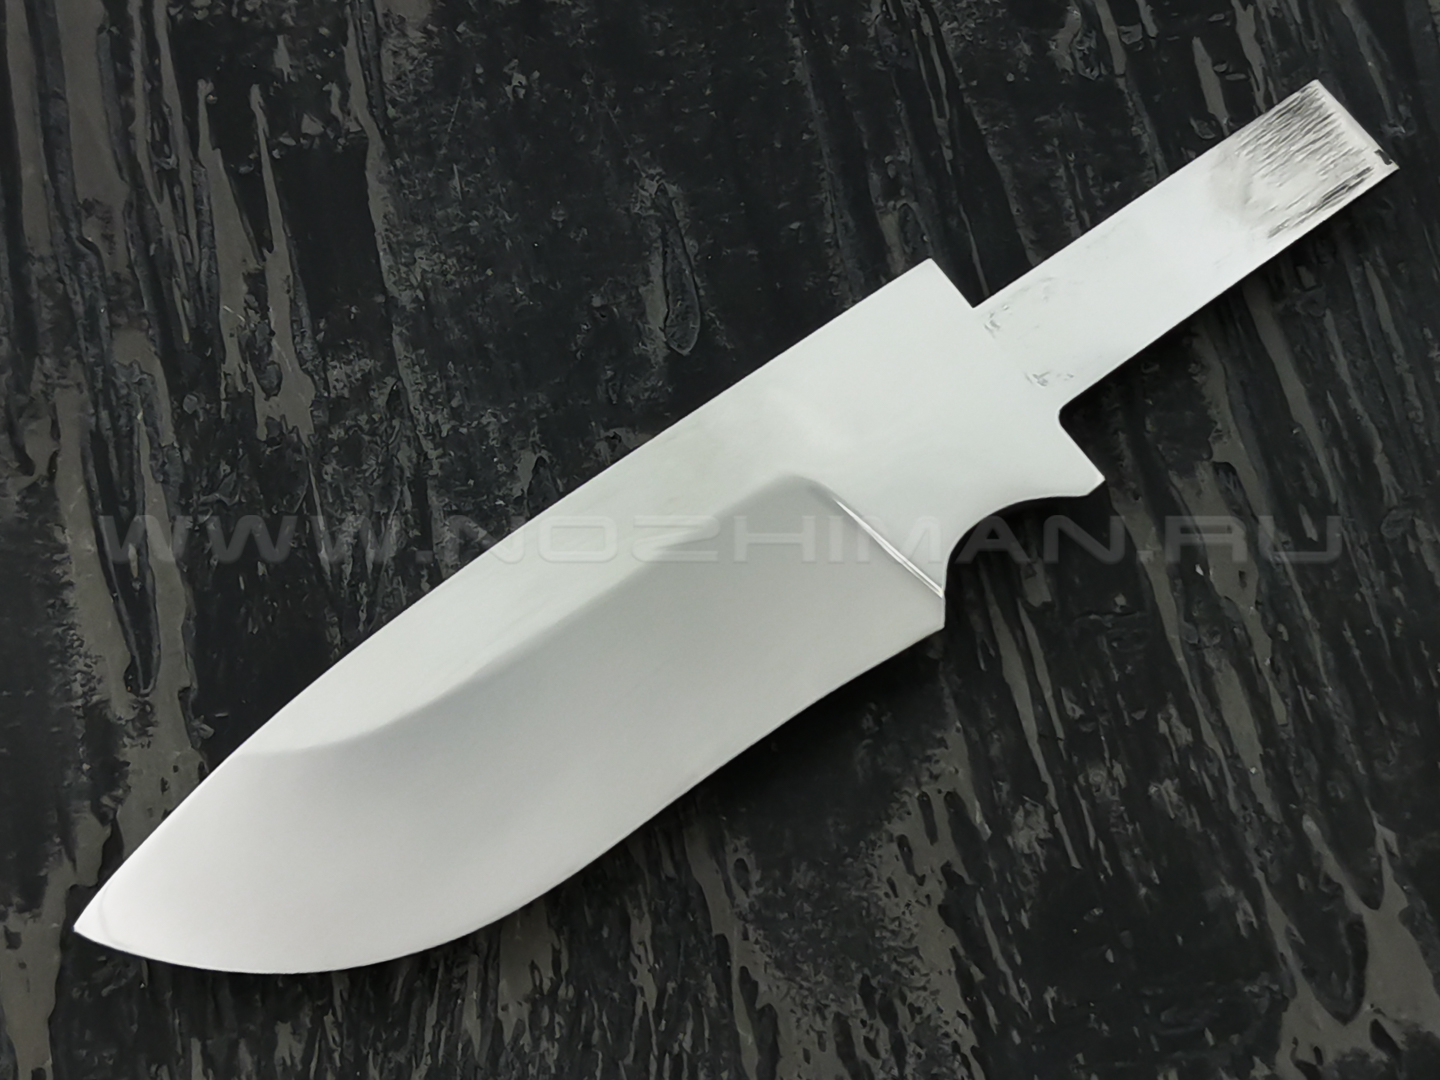 Купить охотничий нож в магазине ножей: особенности клинков